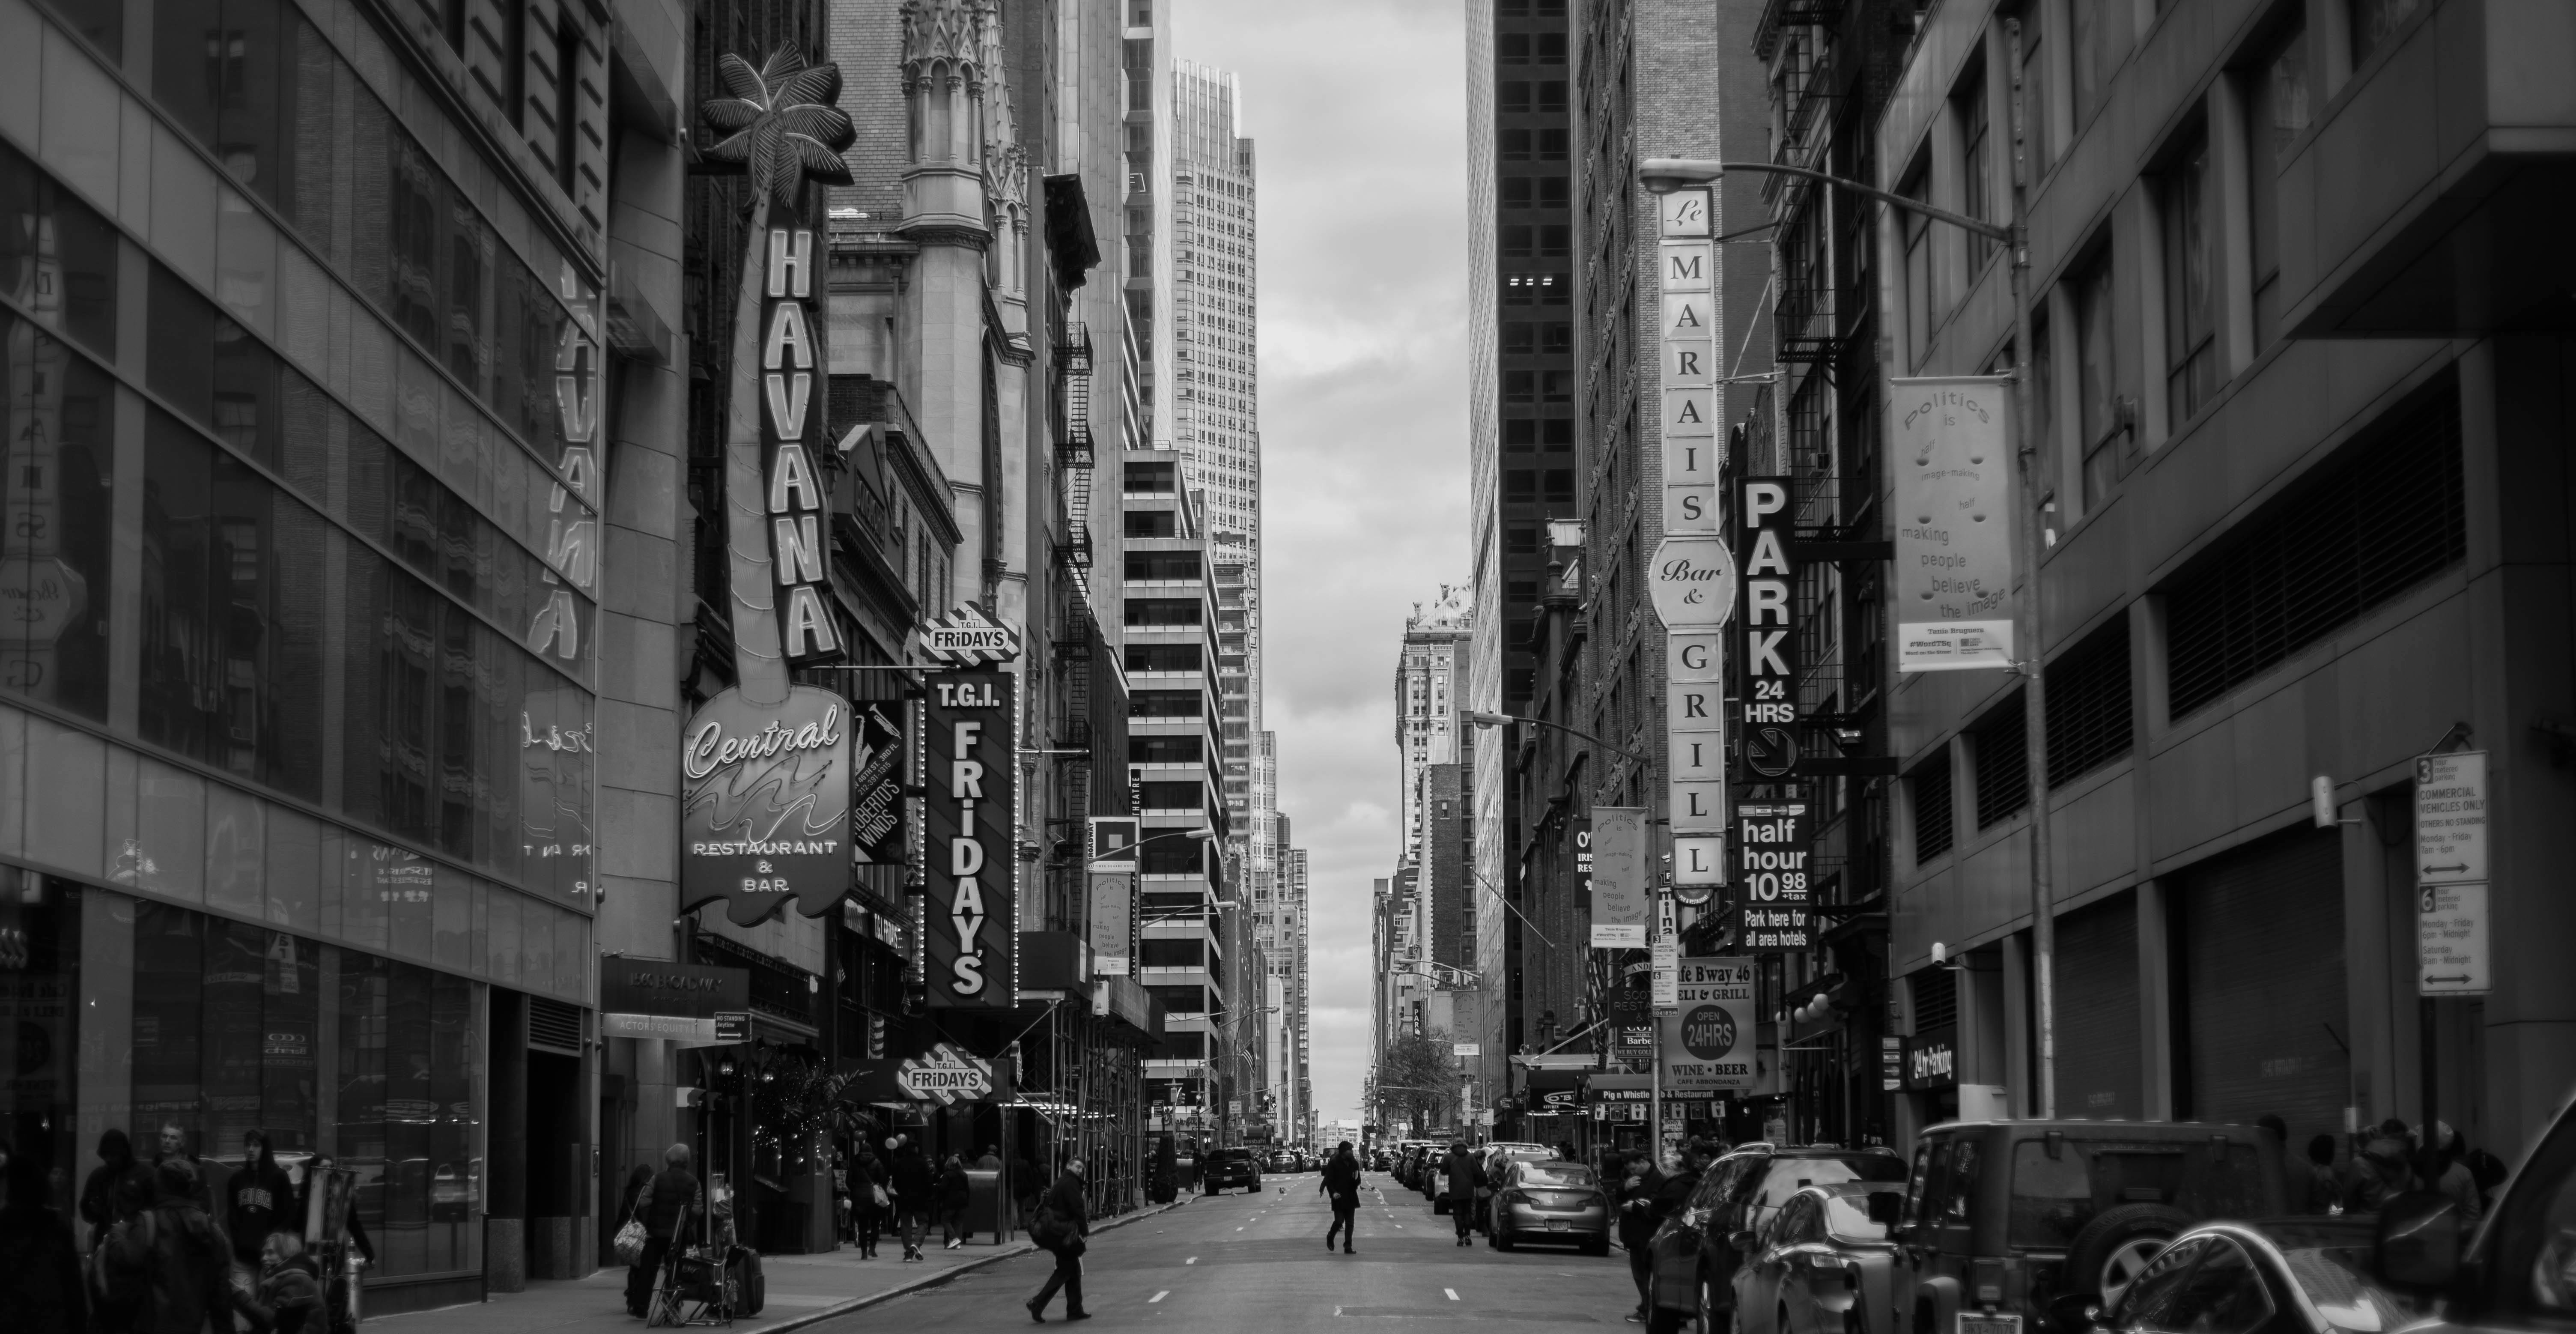 Thành phố Đen Trắng là một bộ sưu tập những bức ảnh đen trắng về những góc phố buồn trong thành phố. Tải hoàn toàn miễn phí, bạn sẽ có cho mình những bức ảnh cực kỳ ấn tượng với đường phố buồn lạnh và sâu lắng. Hãy cùng trải nghiệm và cảm nhận nhé.